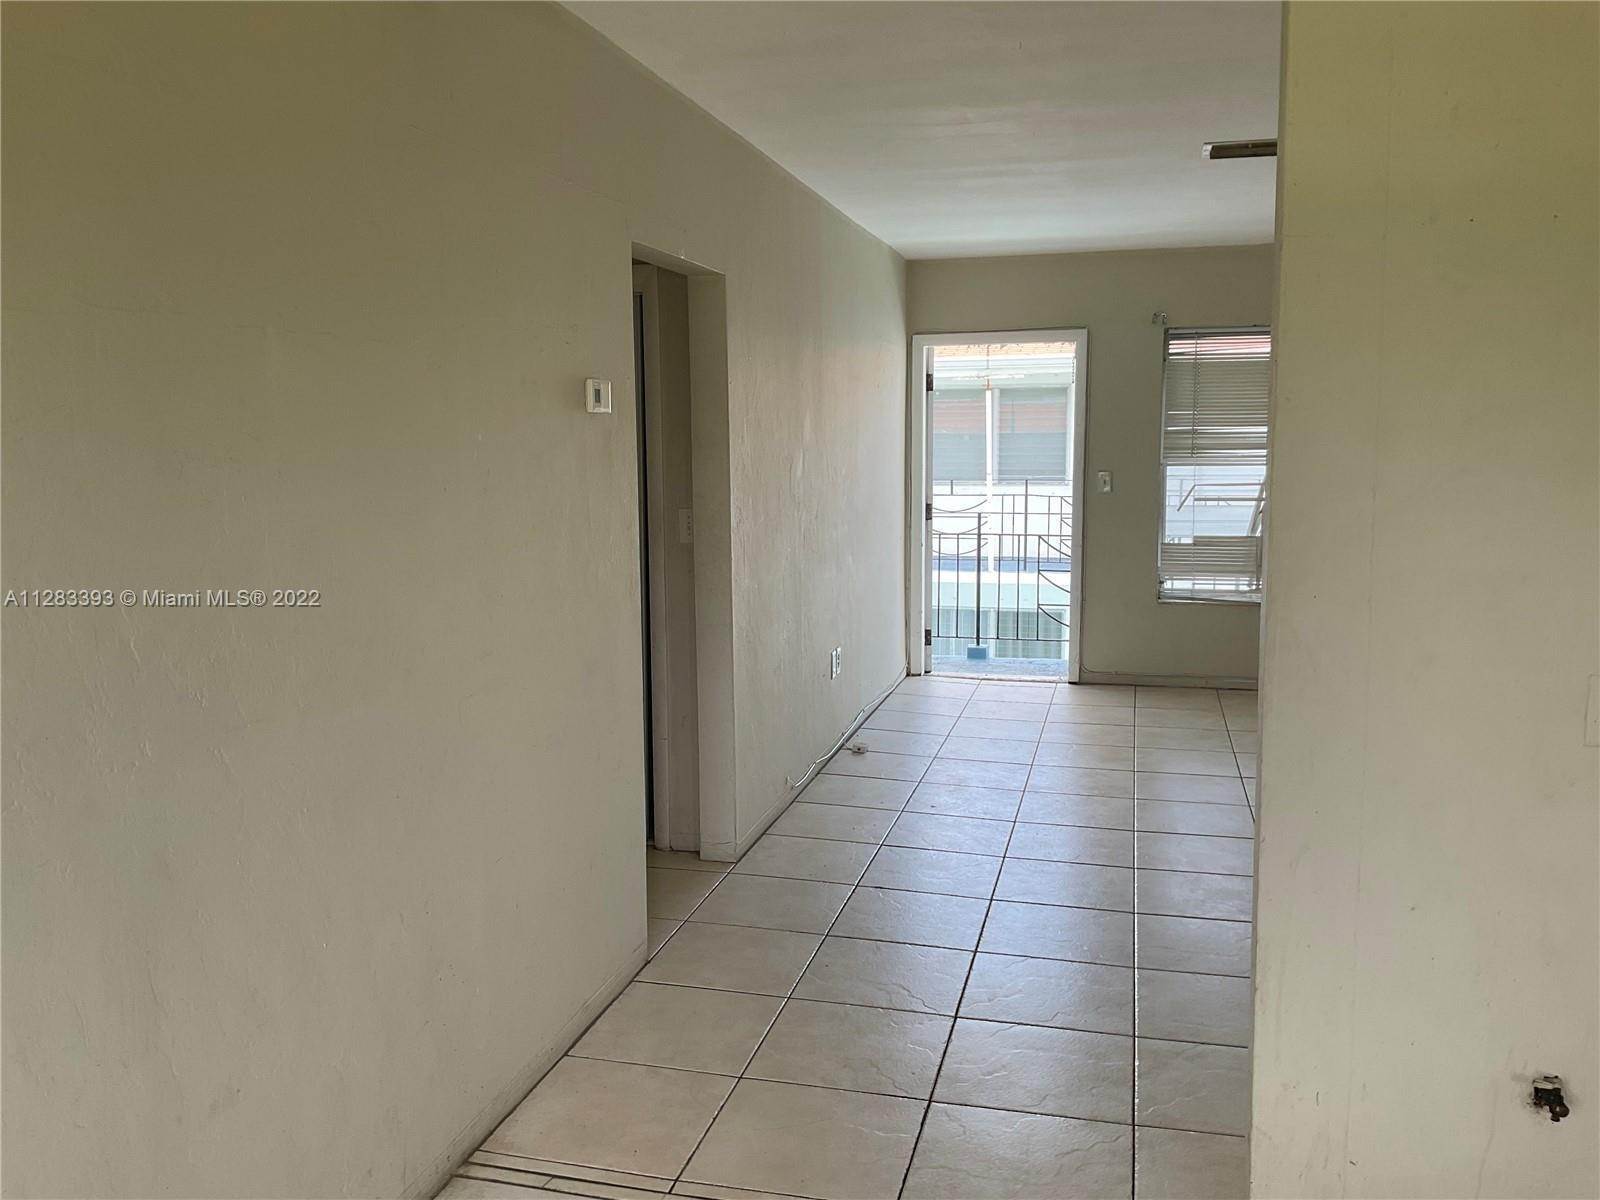 Apartment at Miami, FL 33162